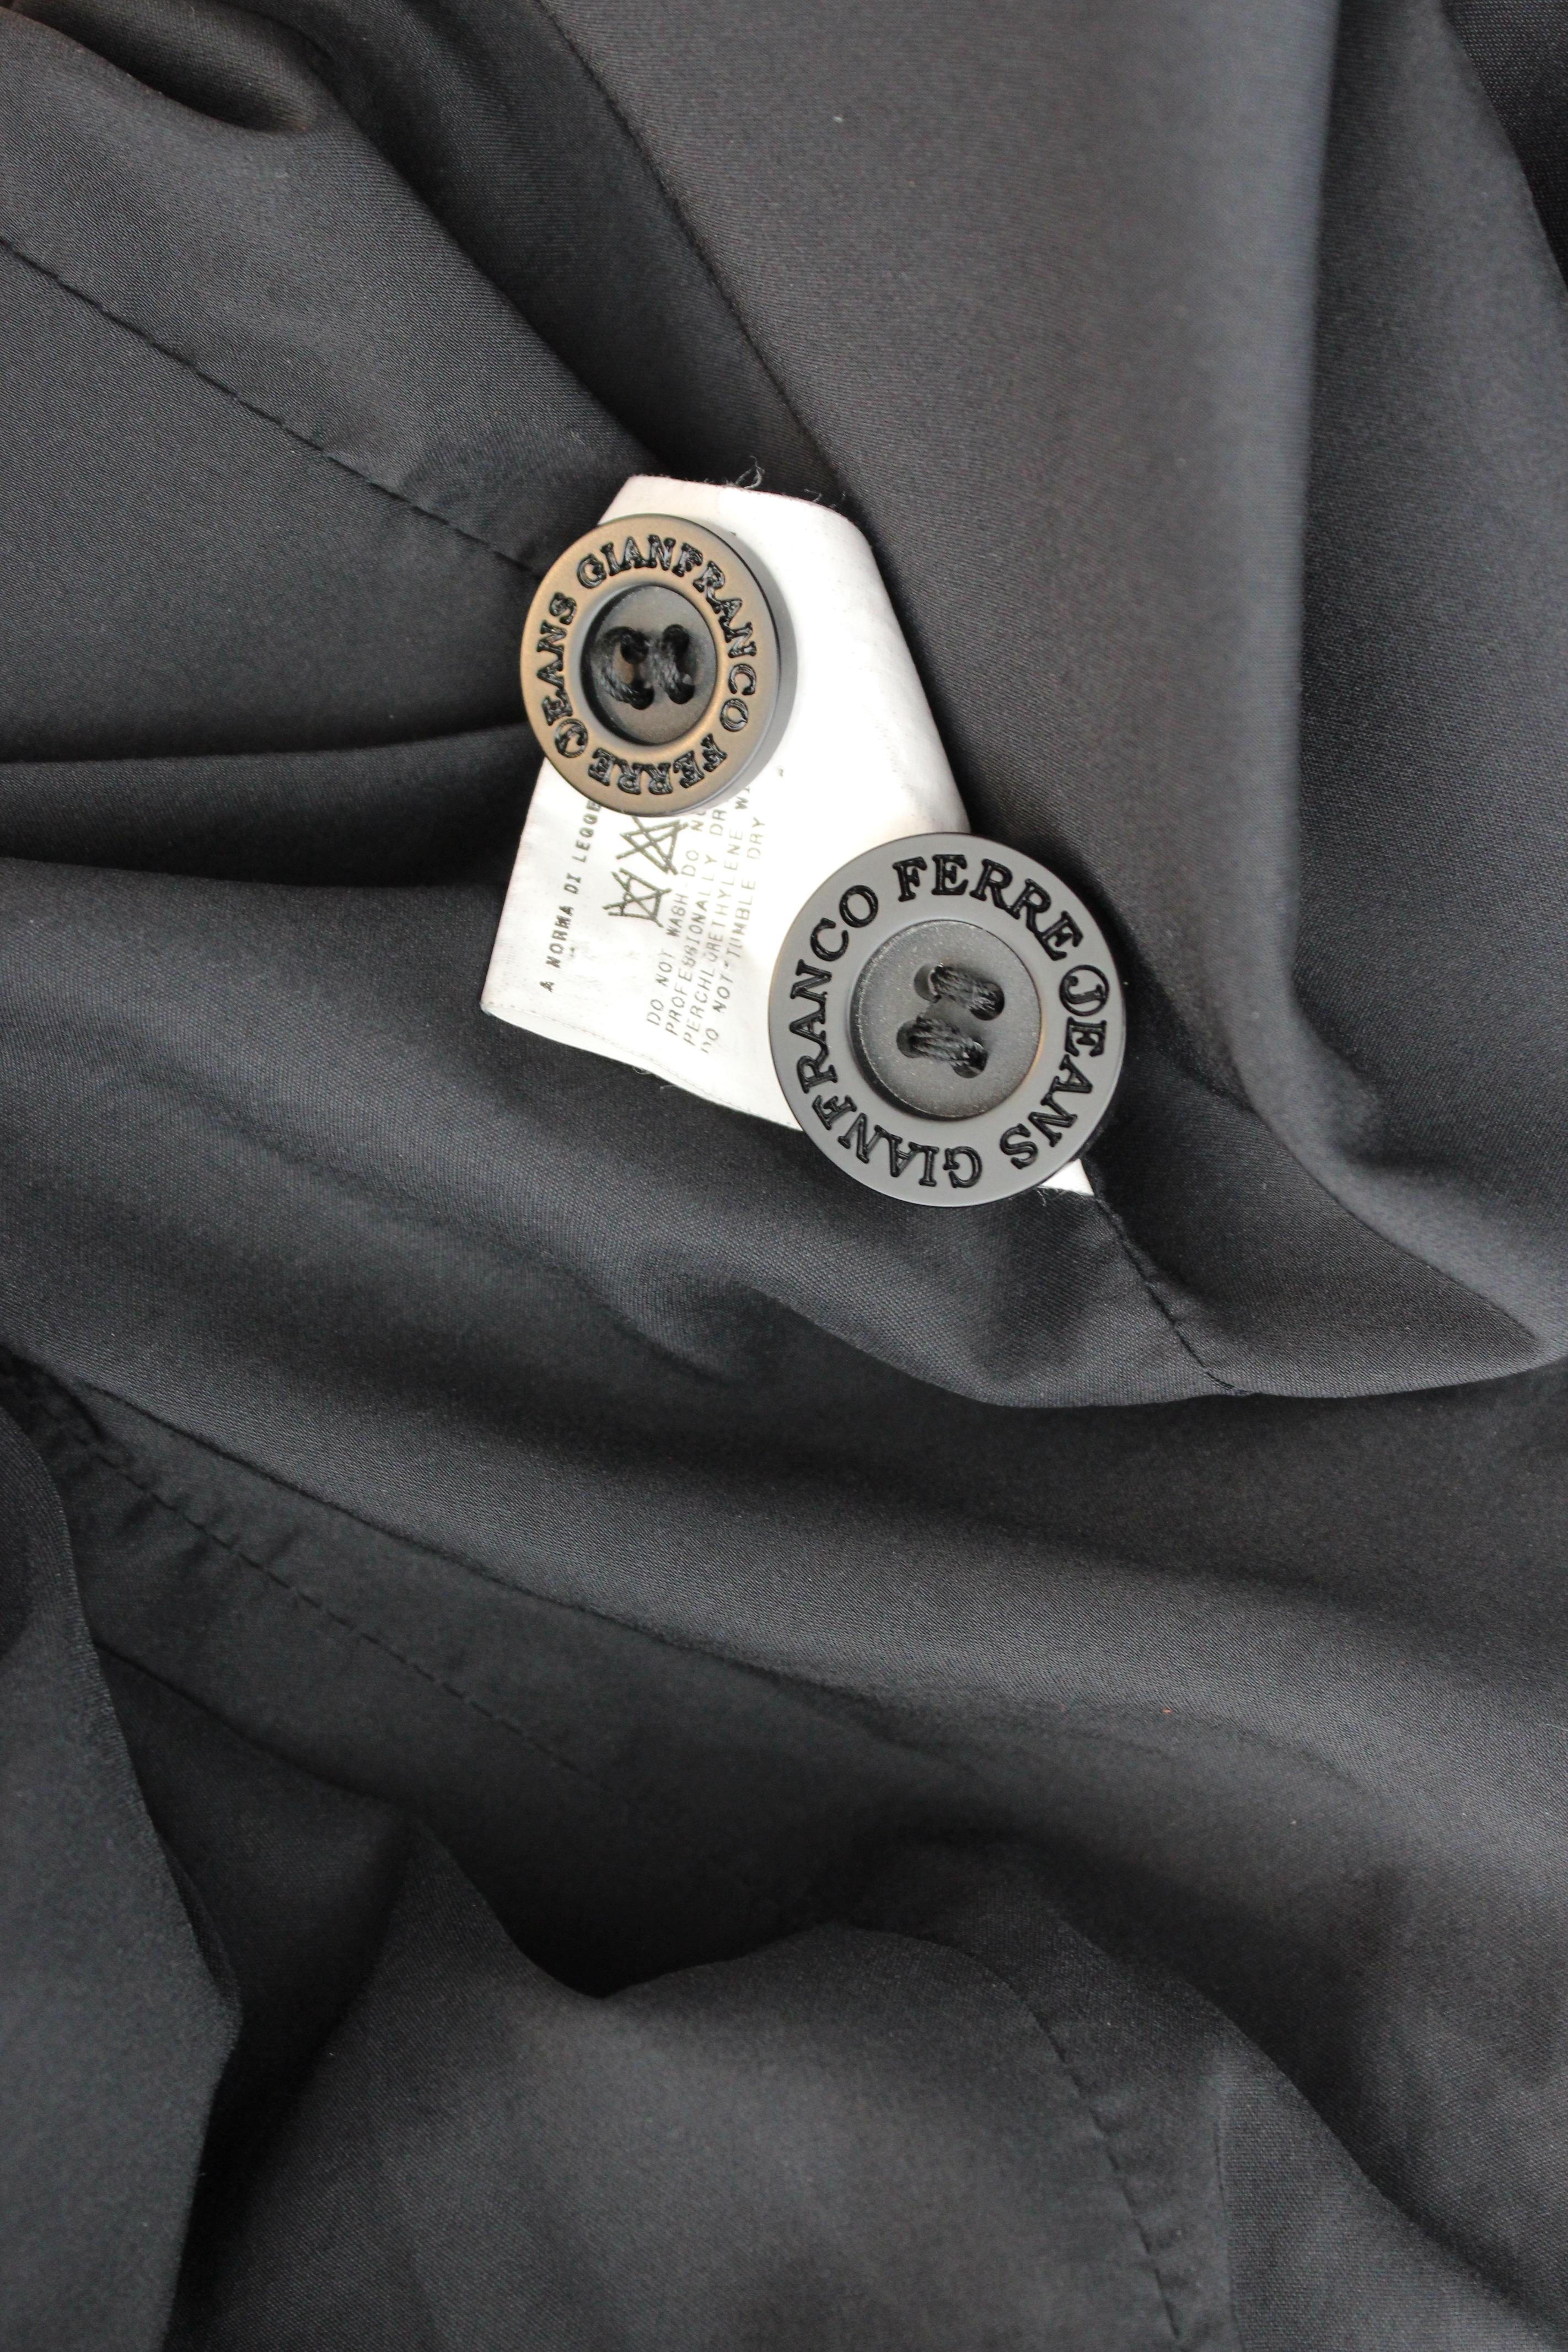 Gianfranco Ferre Jeans Vintage 2000s Damenjacke. Taillierte Jacke, Farbe schwarz. Verschluss mit Ton-in-Ton-Knöpfen. 92% Polyamid, 8% Elasthan, jeansähnlicher Stoff. Hergestellt in Italien.

Zustand: Ausgezeichnet

Artikel verwendet wenige Male,